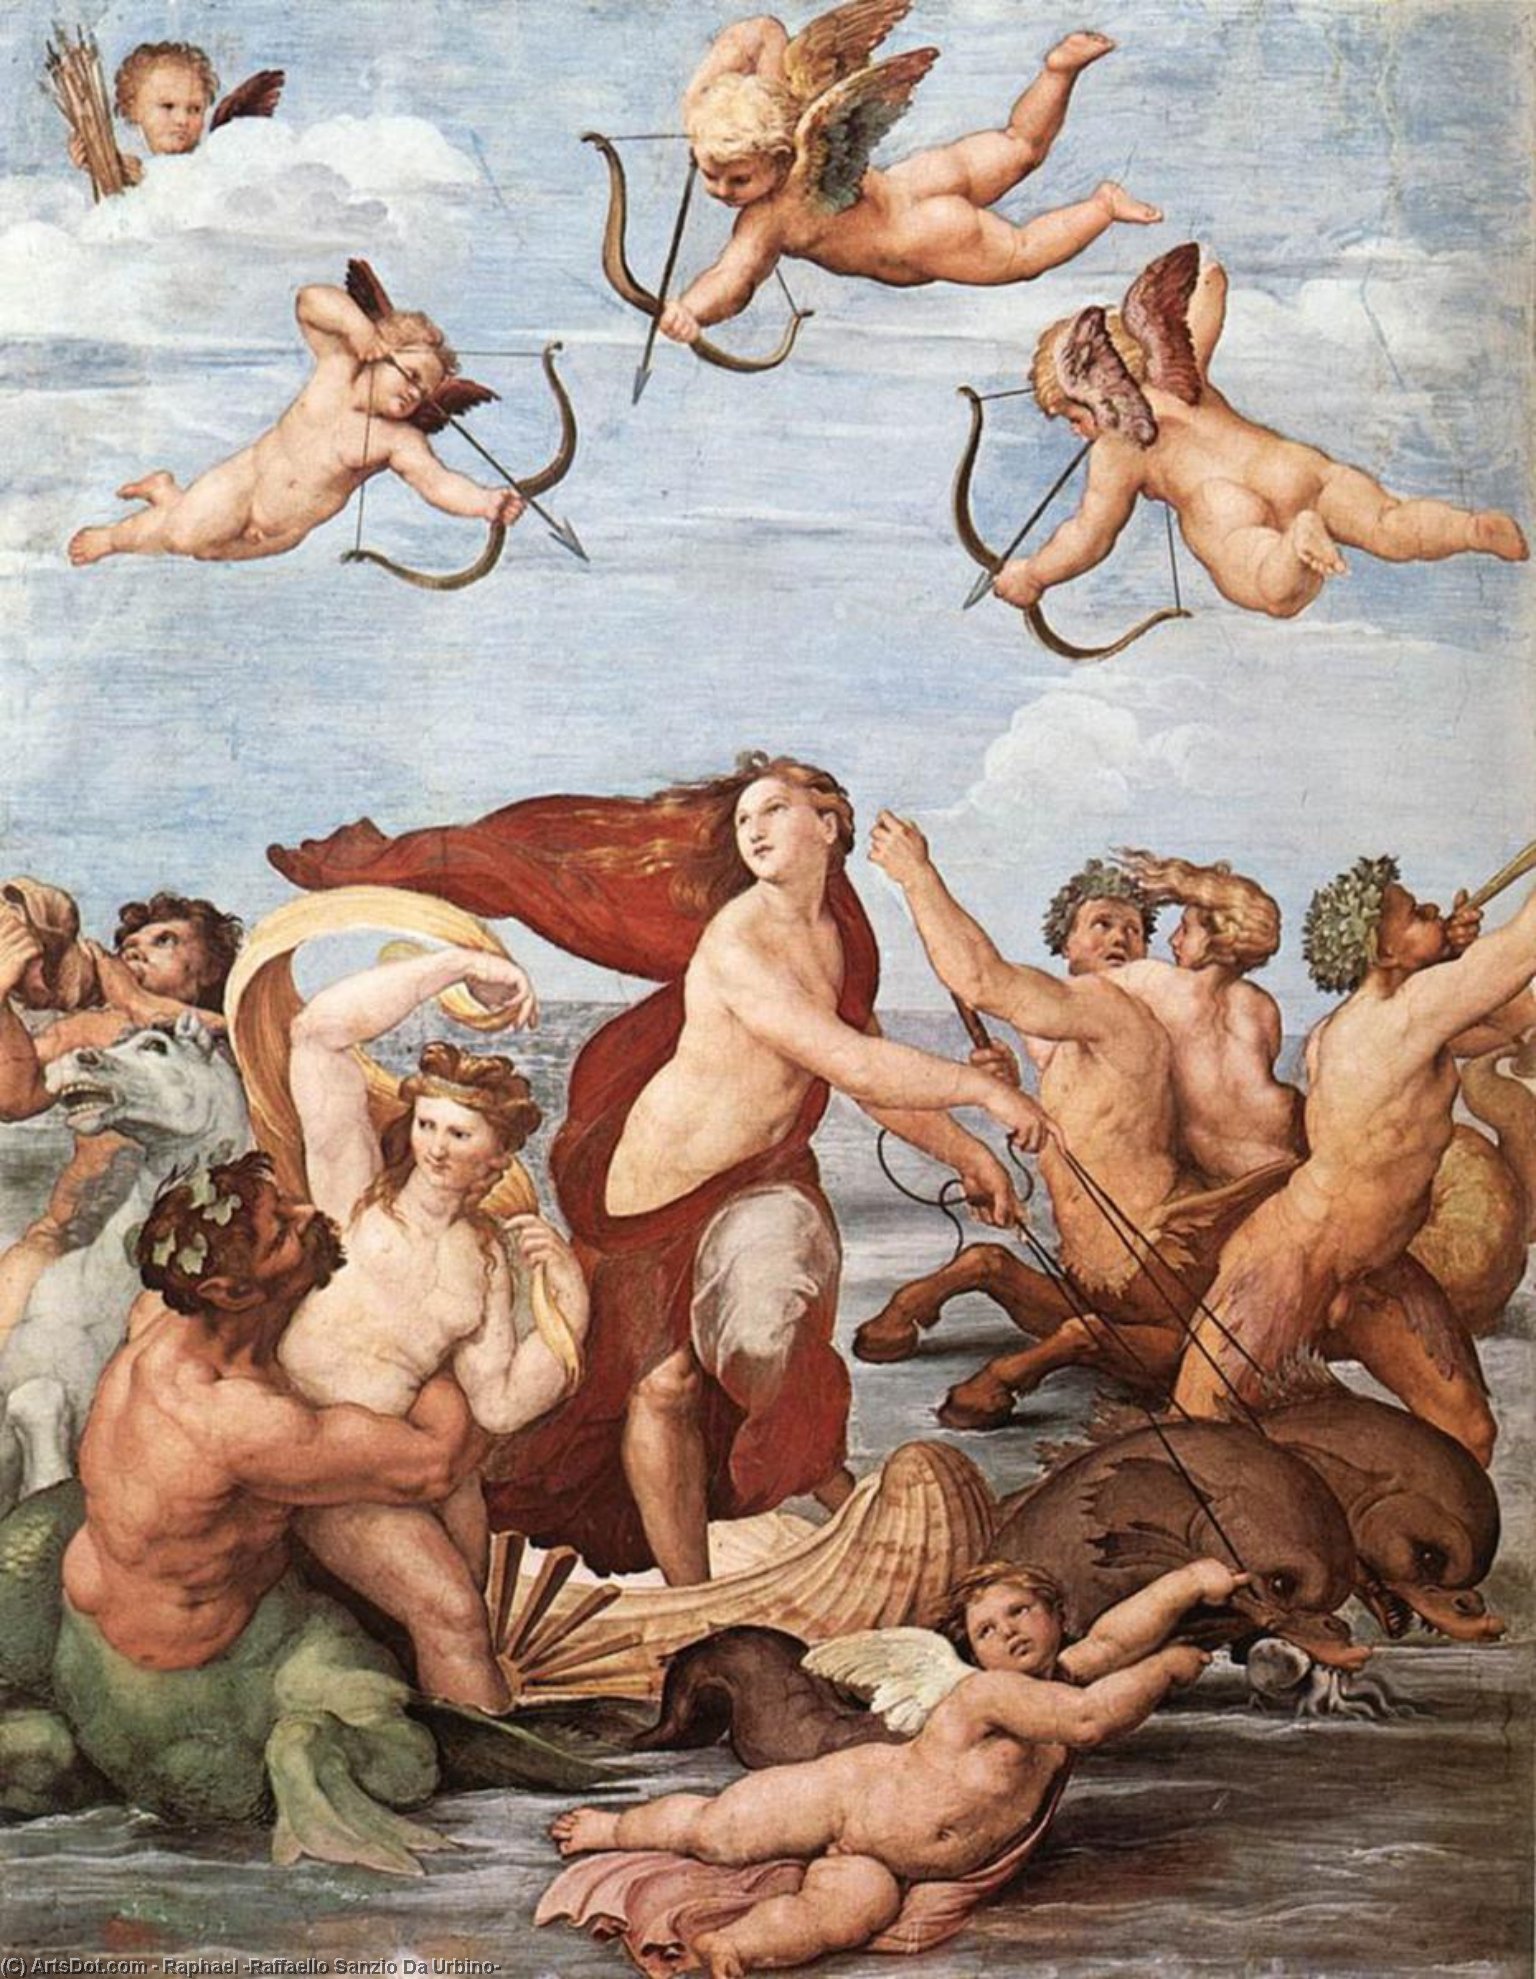 WikiOO.org - Encyclopedia of Fine Arts - Maleri, Artwork Raphael (Raffaello Sanzio Da Urbino) - The Triumph of Galatea